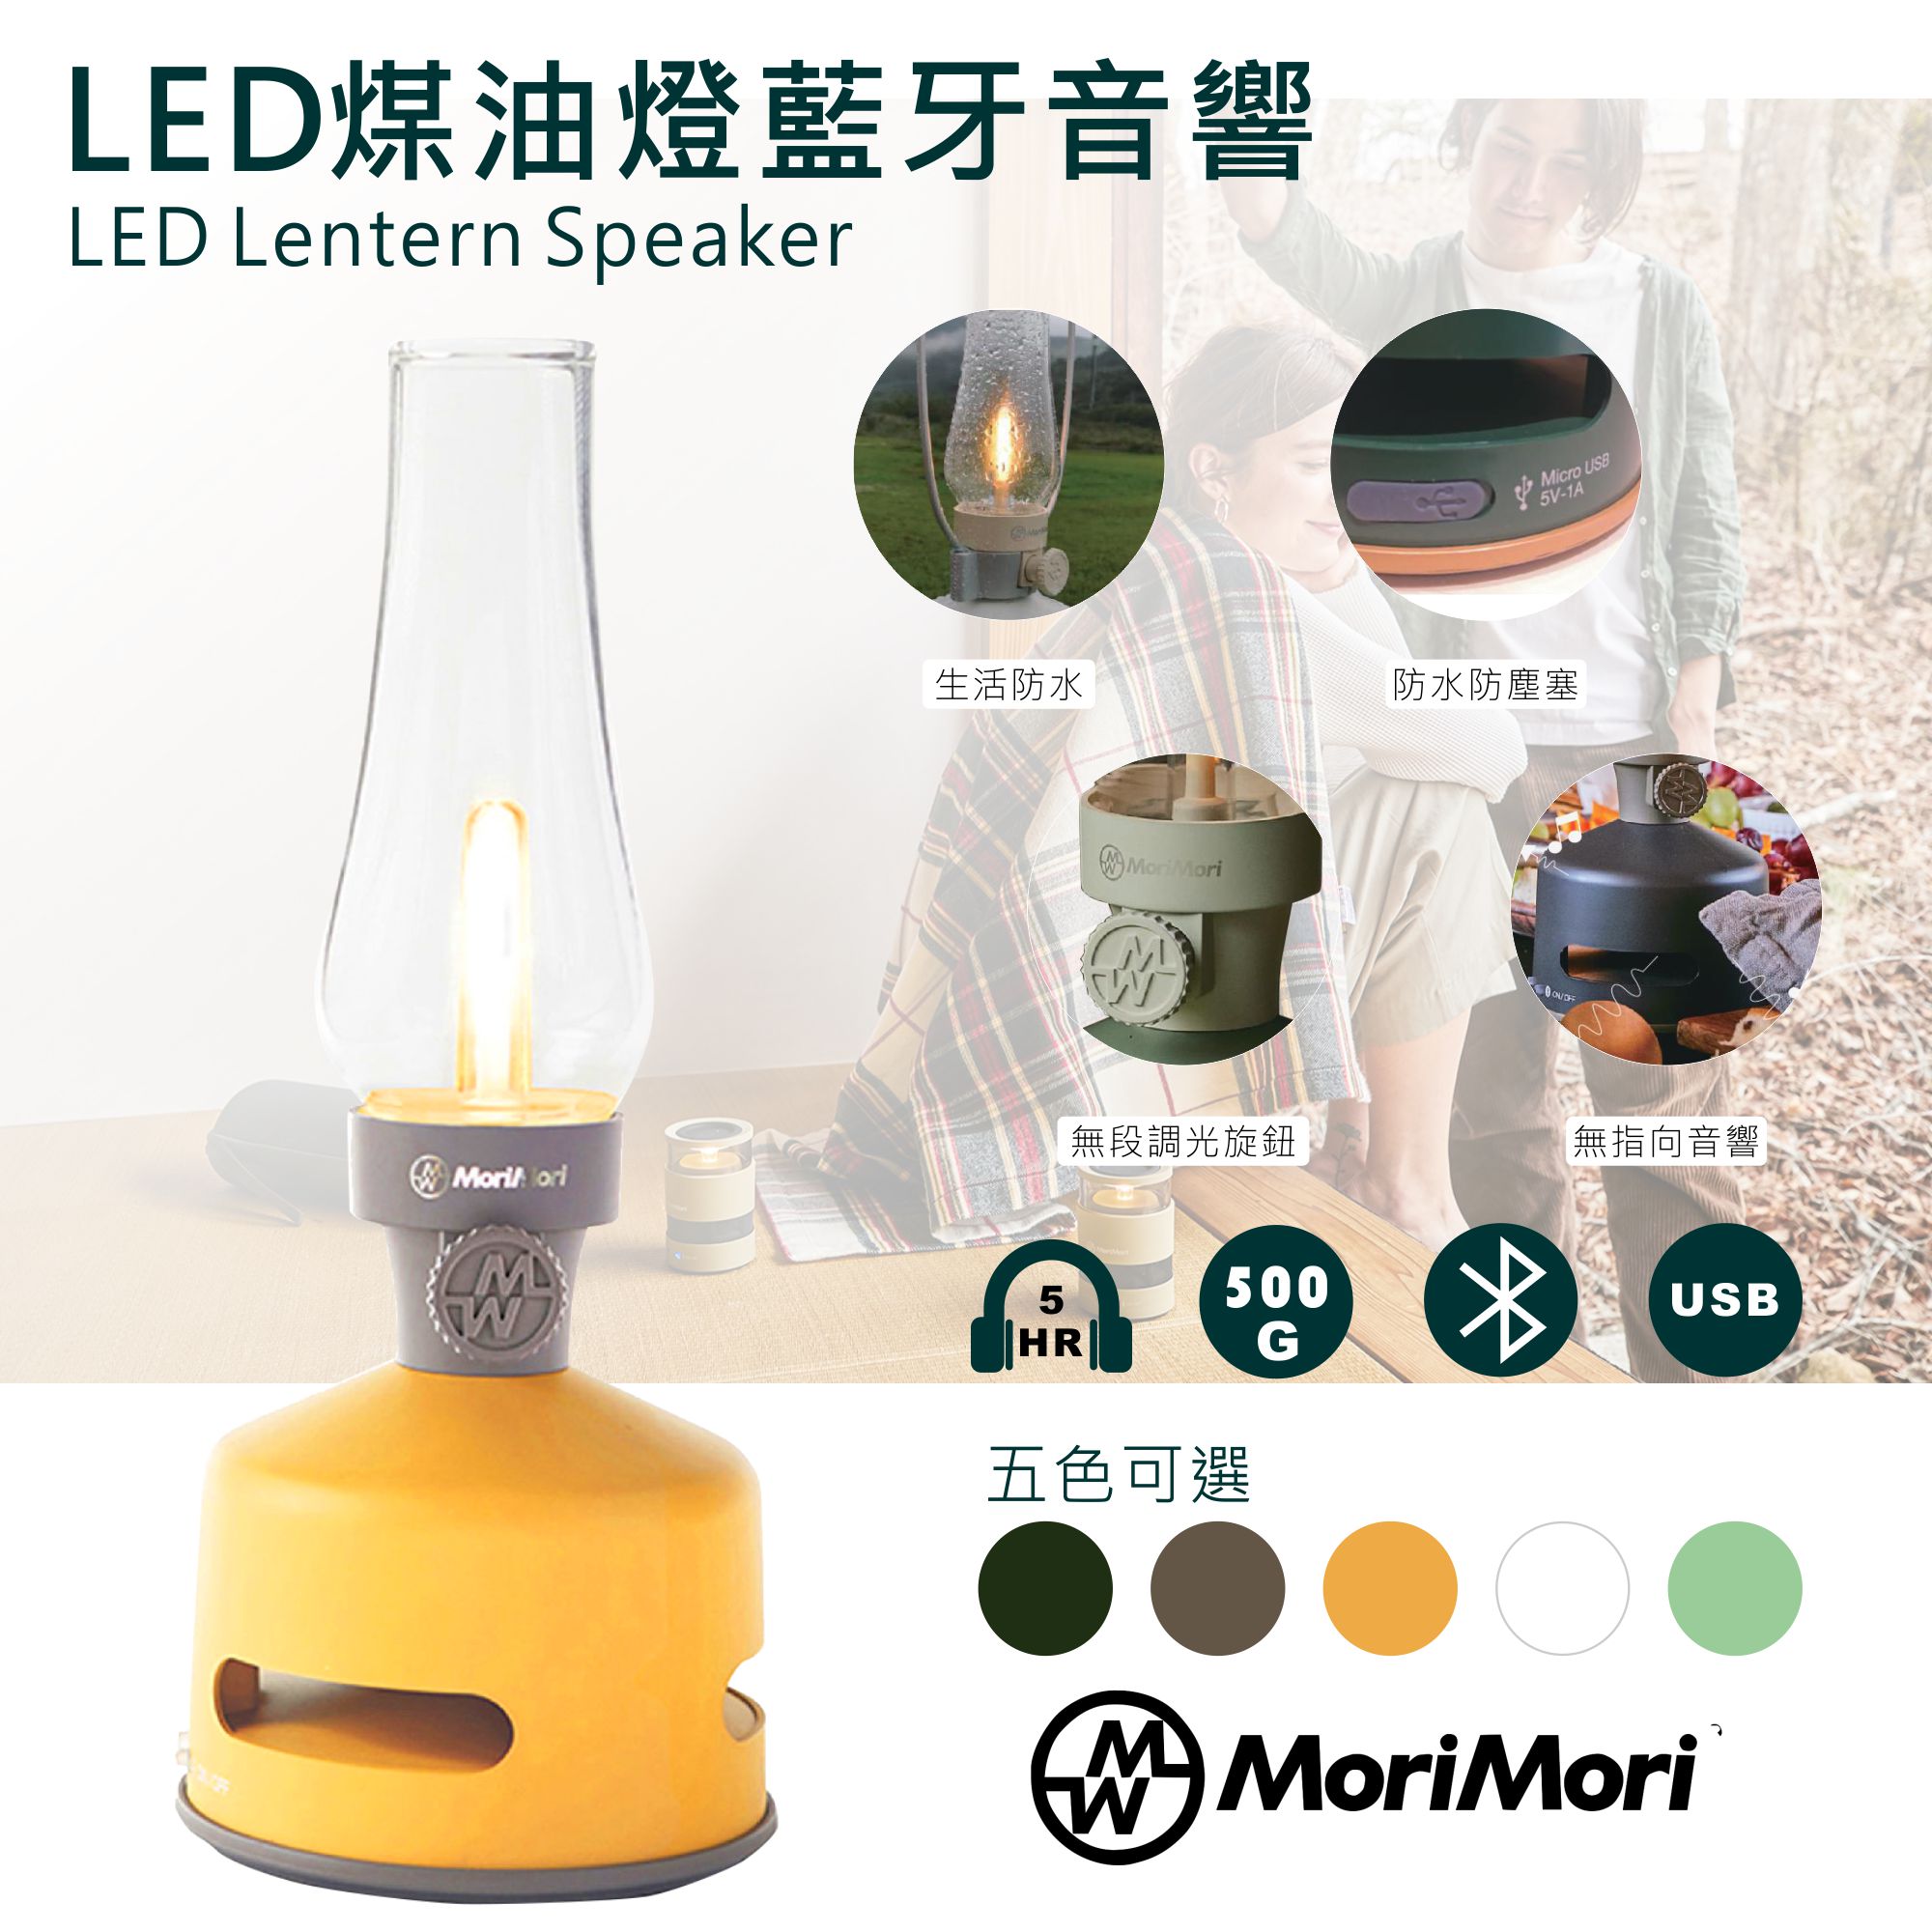 【日本】MoriMori藍芽喇叭燈(黃) 多功能LED燈 小夜燈 無段調光 防水 多功能音響 氣氛燈 高音質音響